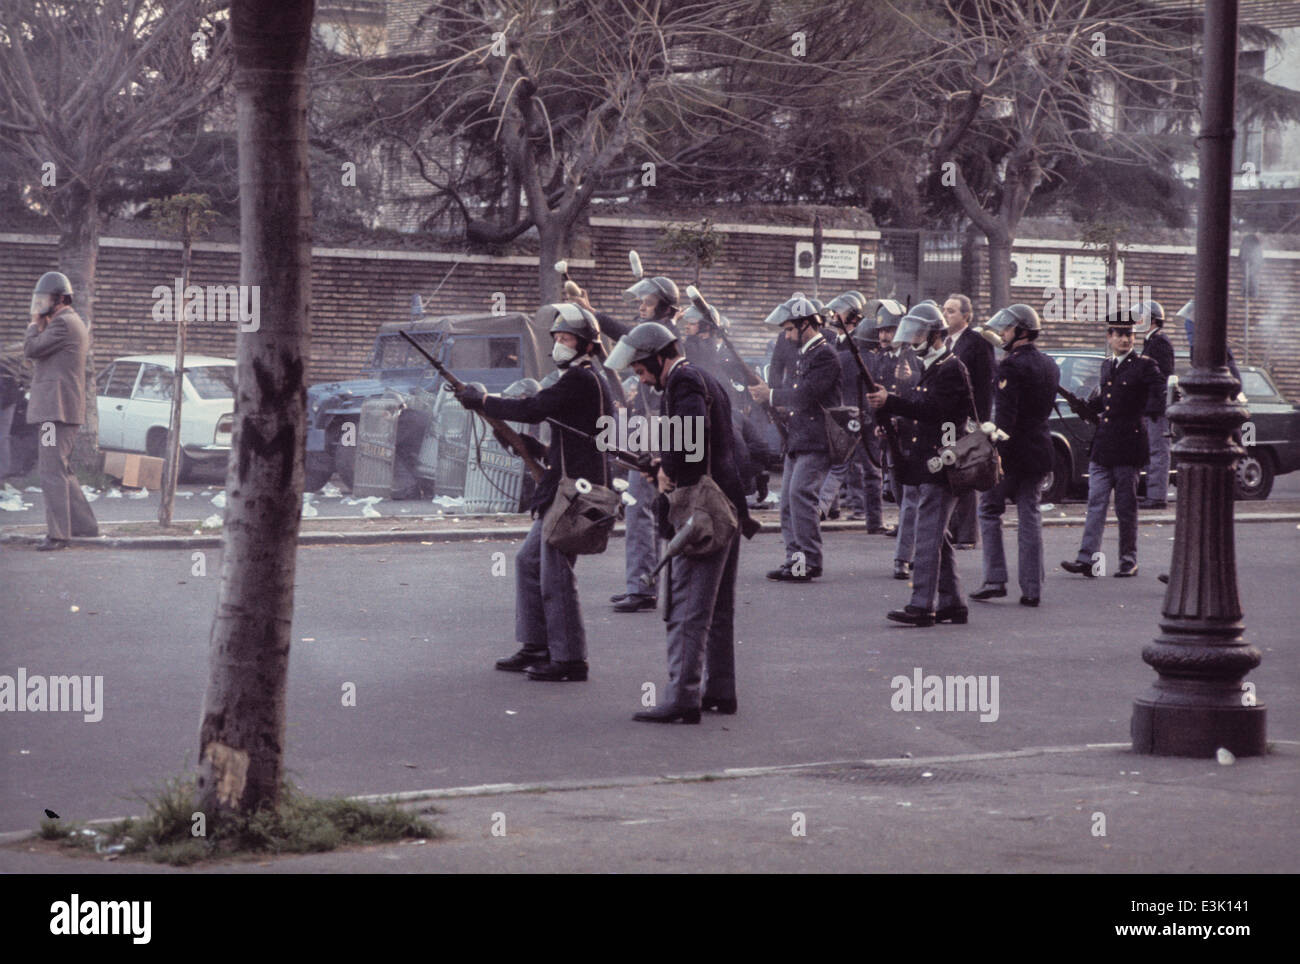 Polizeikräfte während einer Demonstration, 70er Jahre Stockfoto